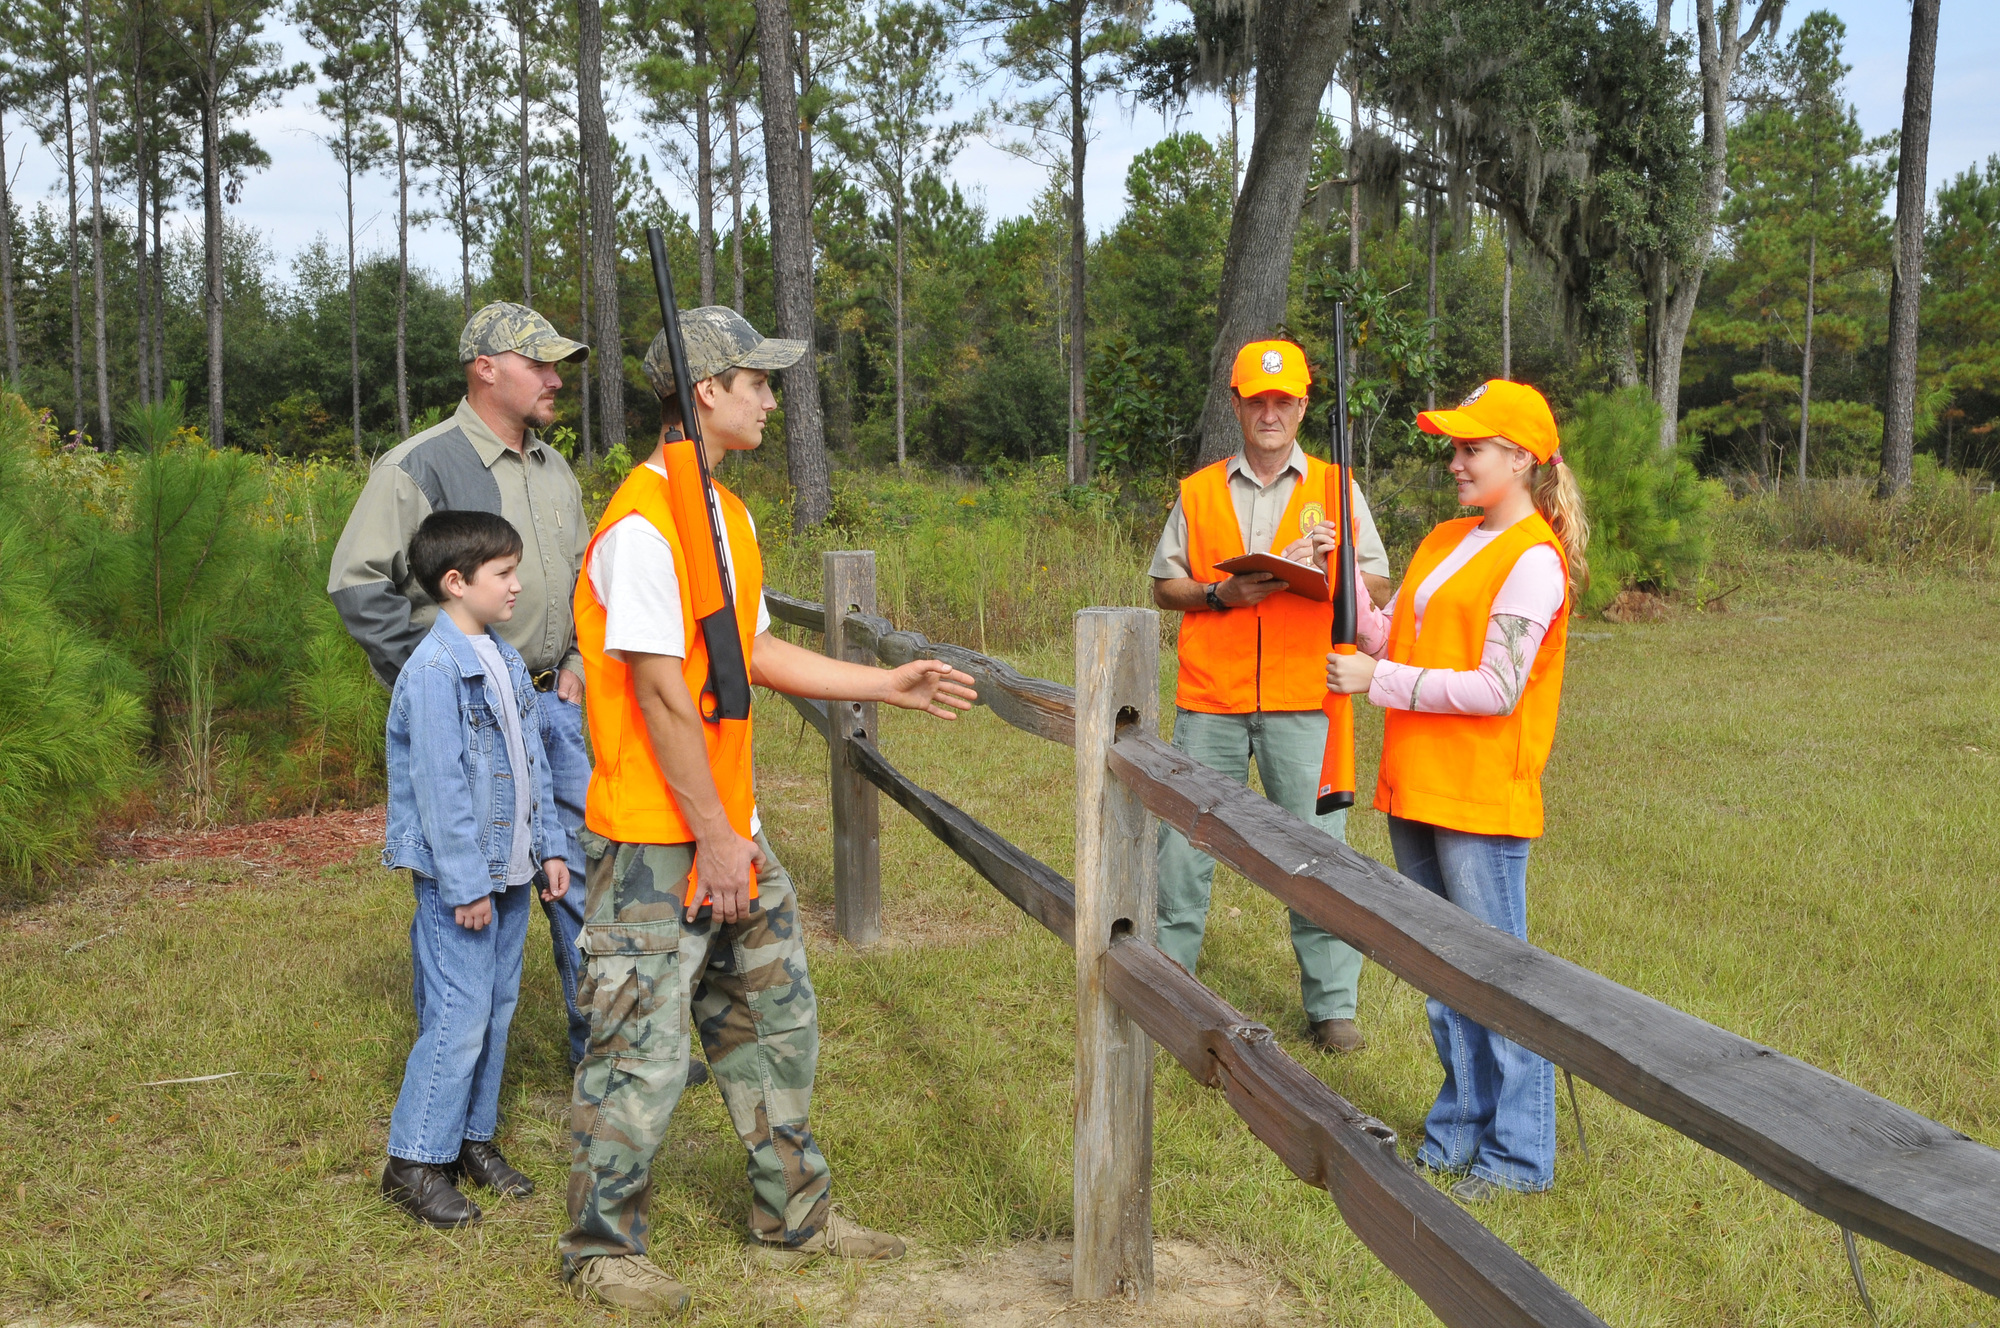 Bringing Back Hunter Safety to Schools